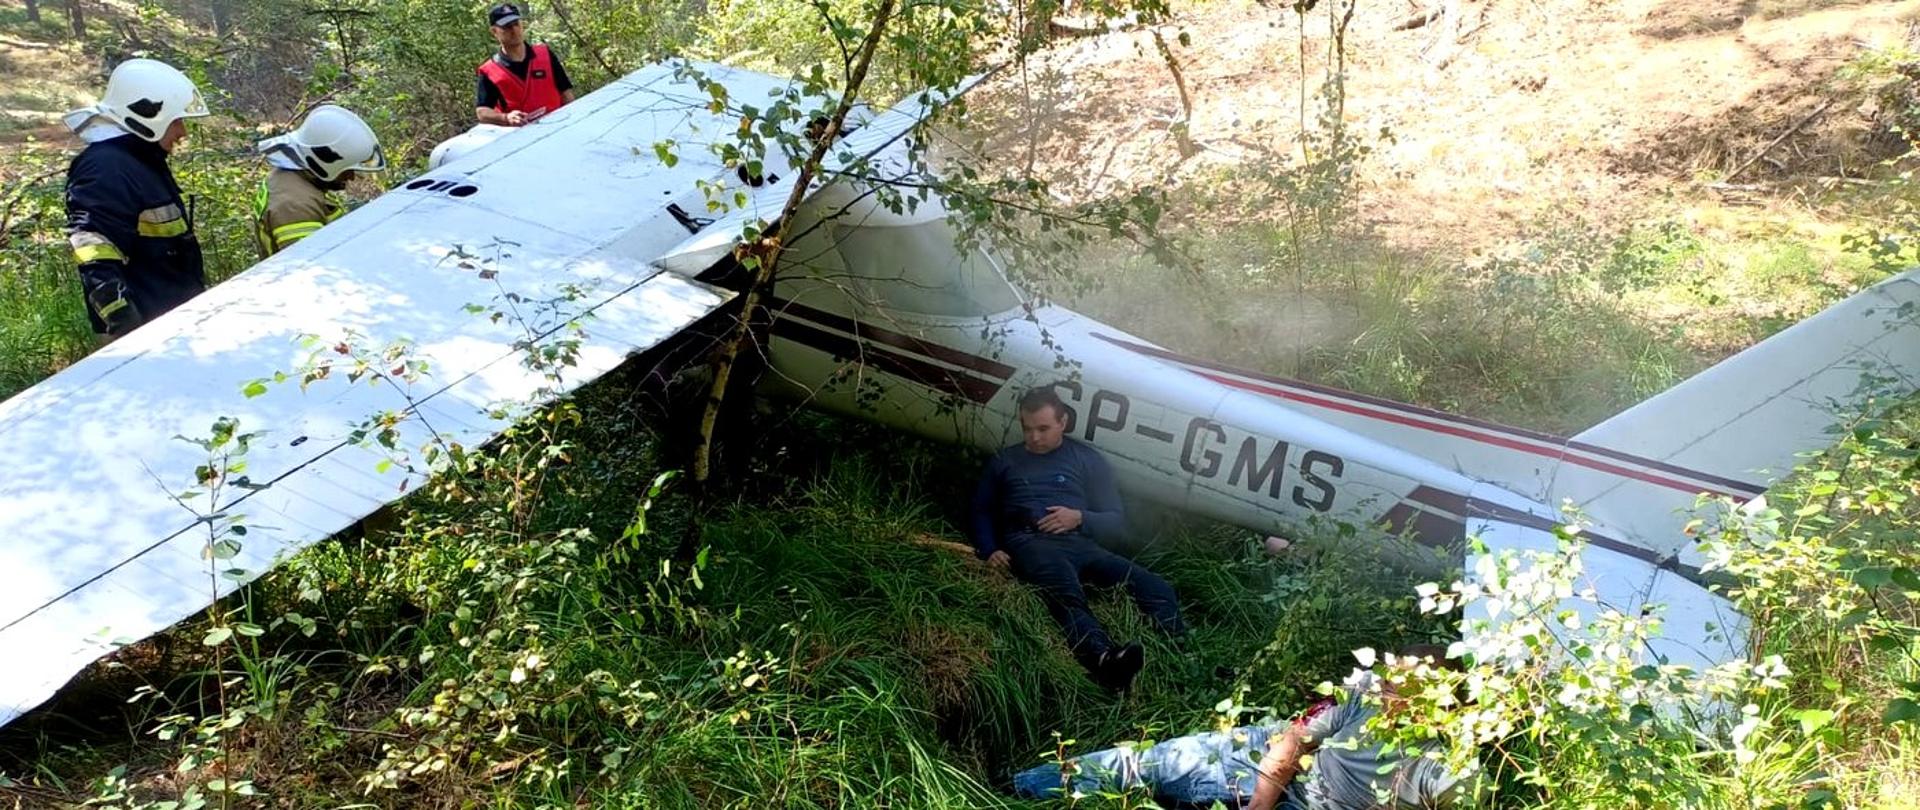 Zdjęcie zrobione na zewnątrz, podczas ćwiczeń. Mały samolot rozbity w lesie. Z samolotu wydobywa się dym. Obok stoi trzech strażaków.